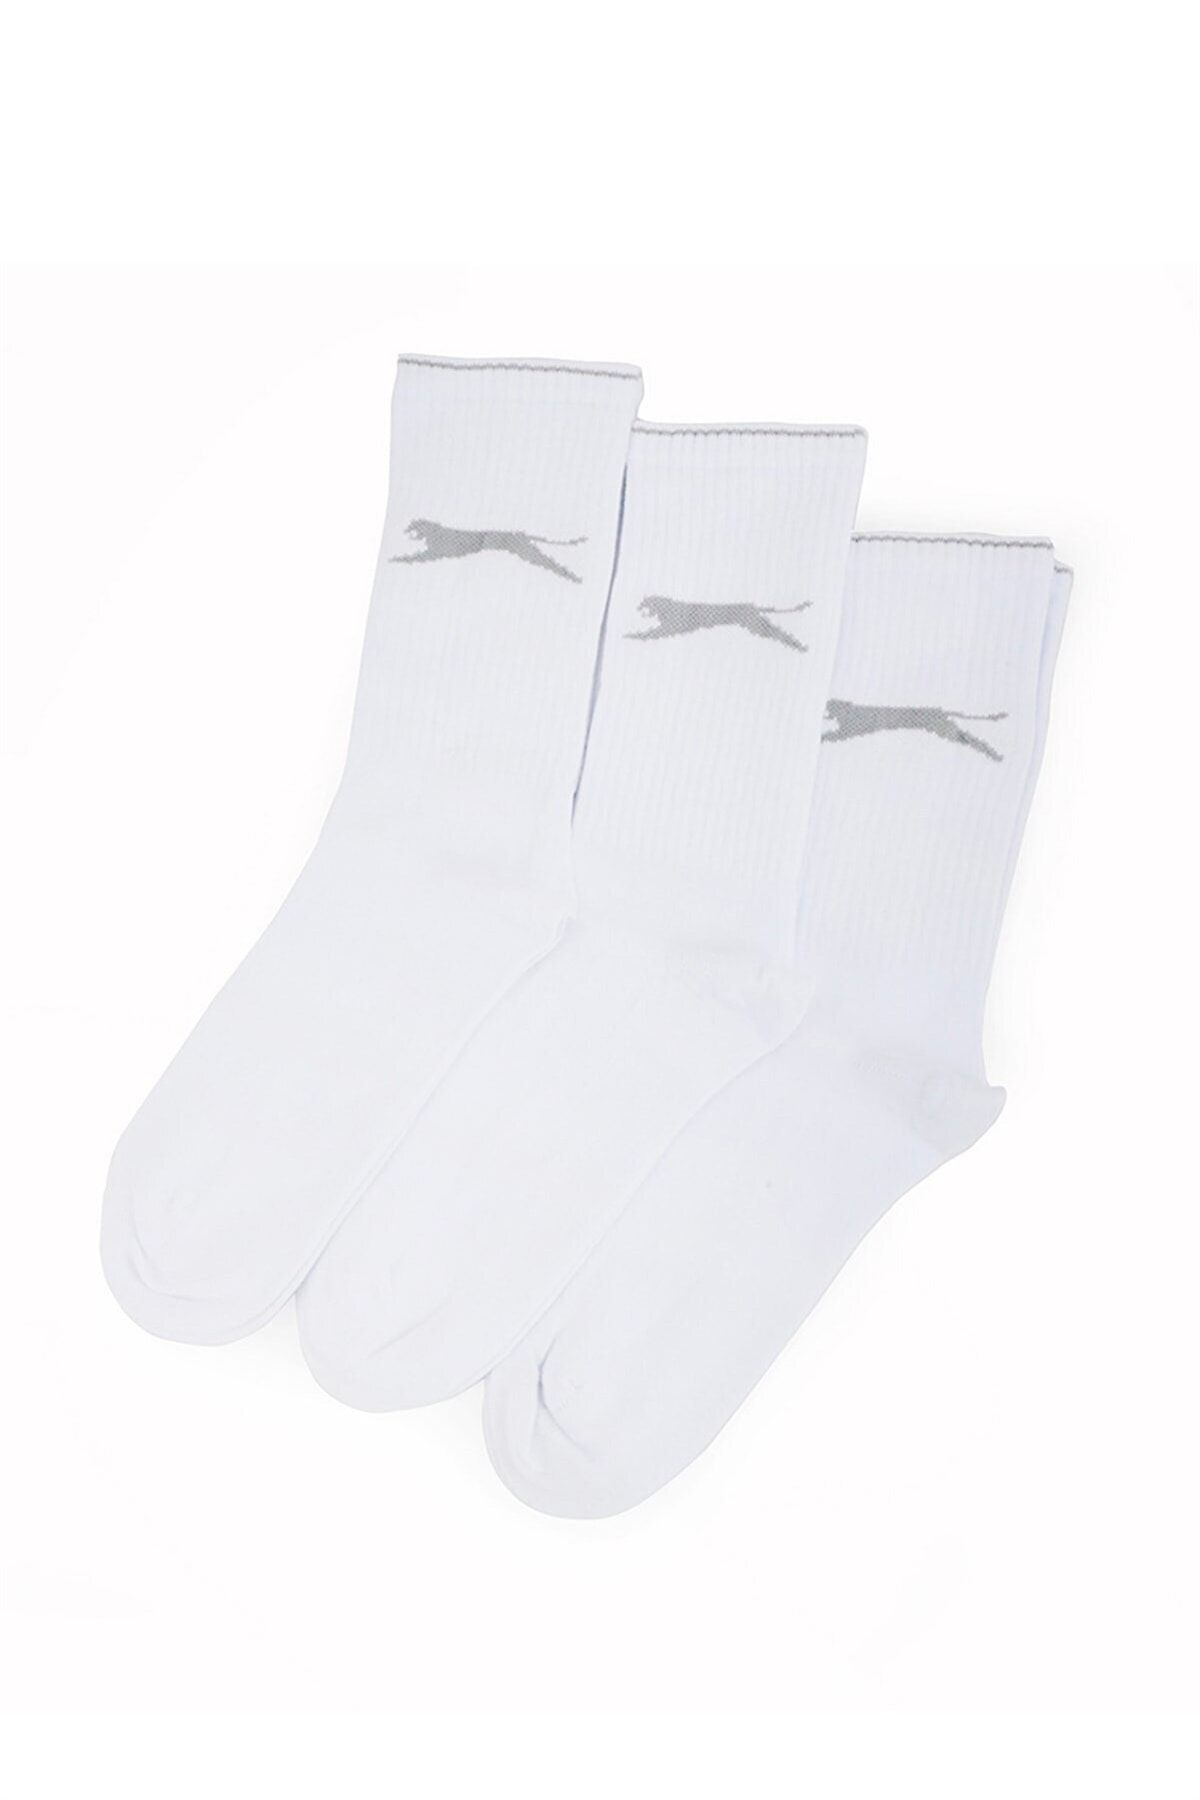 Slazenger Jago Erkek Spor Çorap 40-44 Beyaz 3 Lü Paket V2